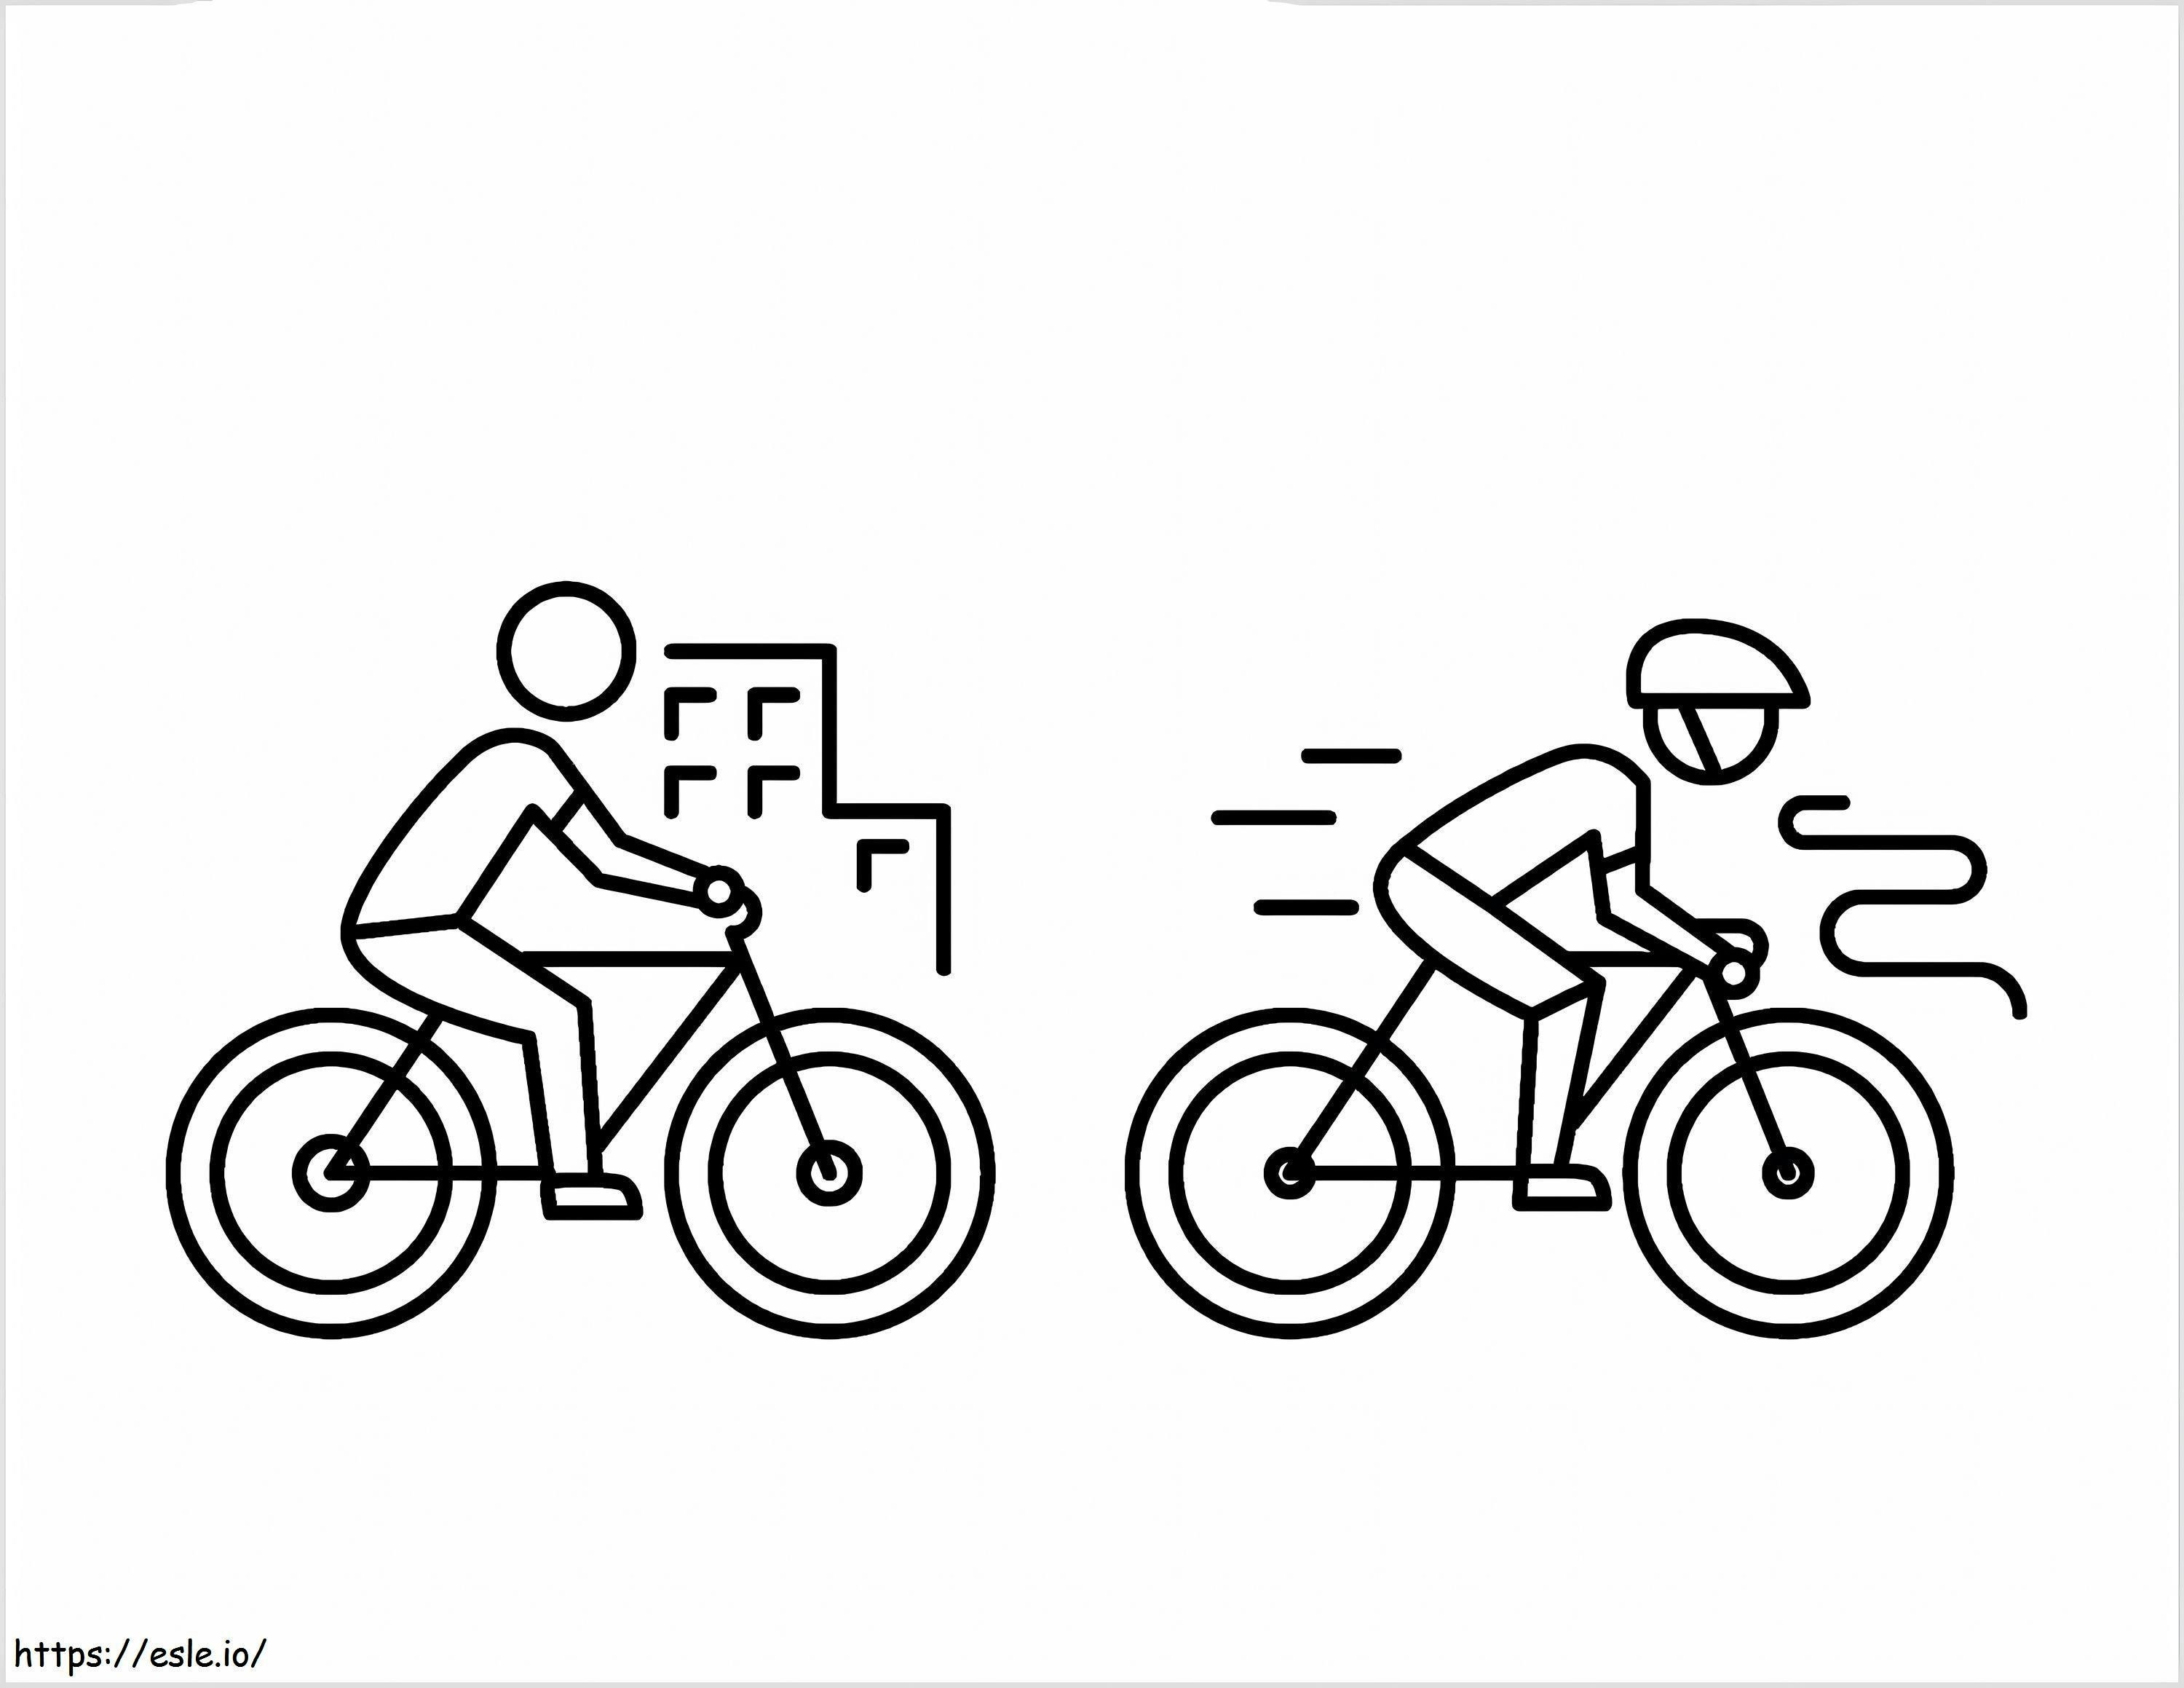 Jazda na rowerze w Internecie kolorowanka